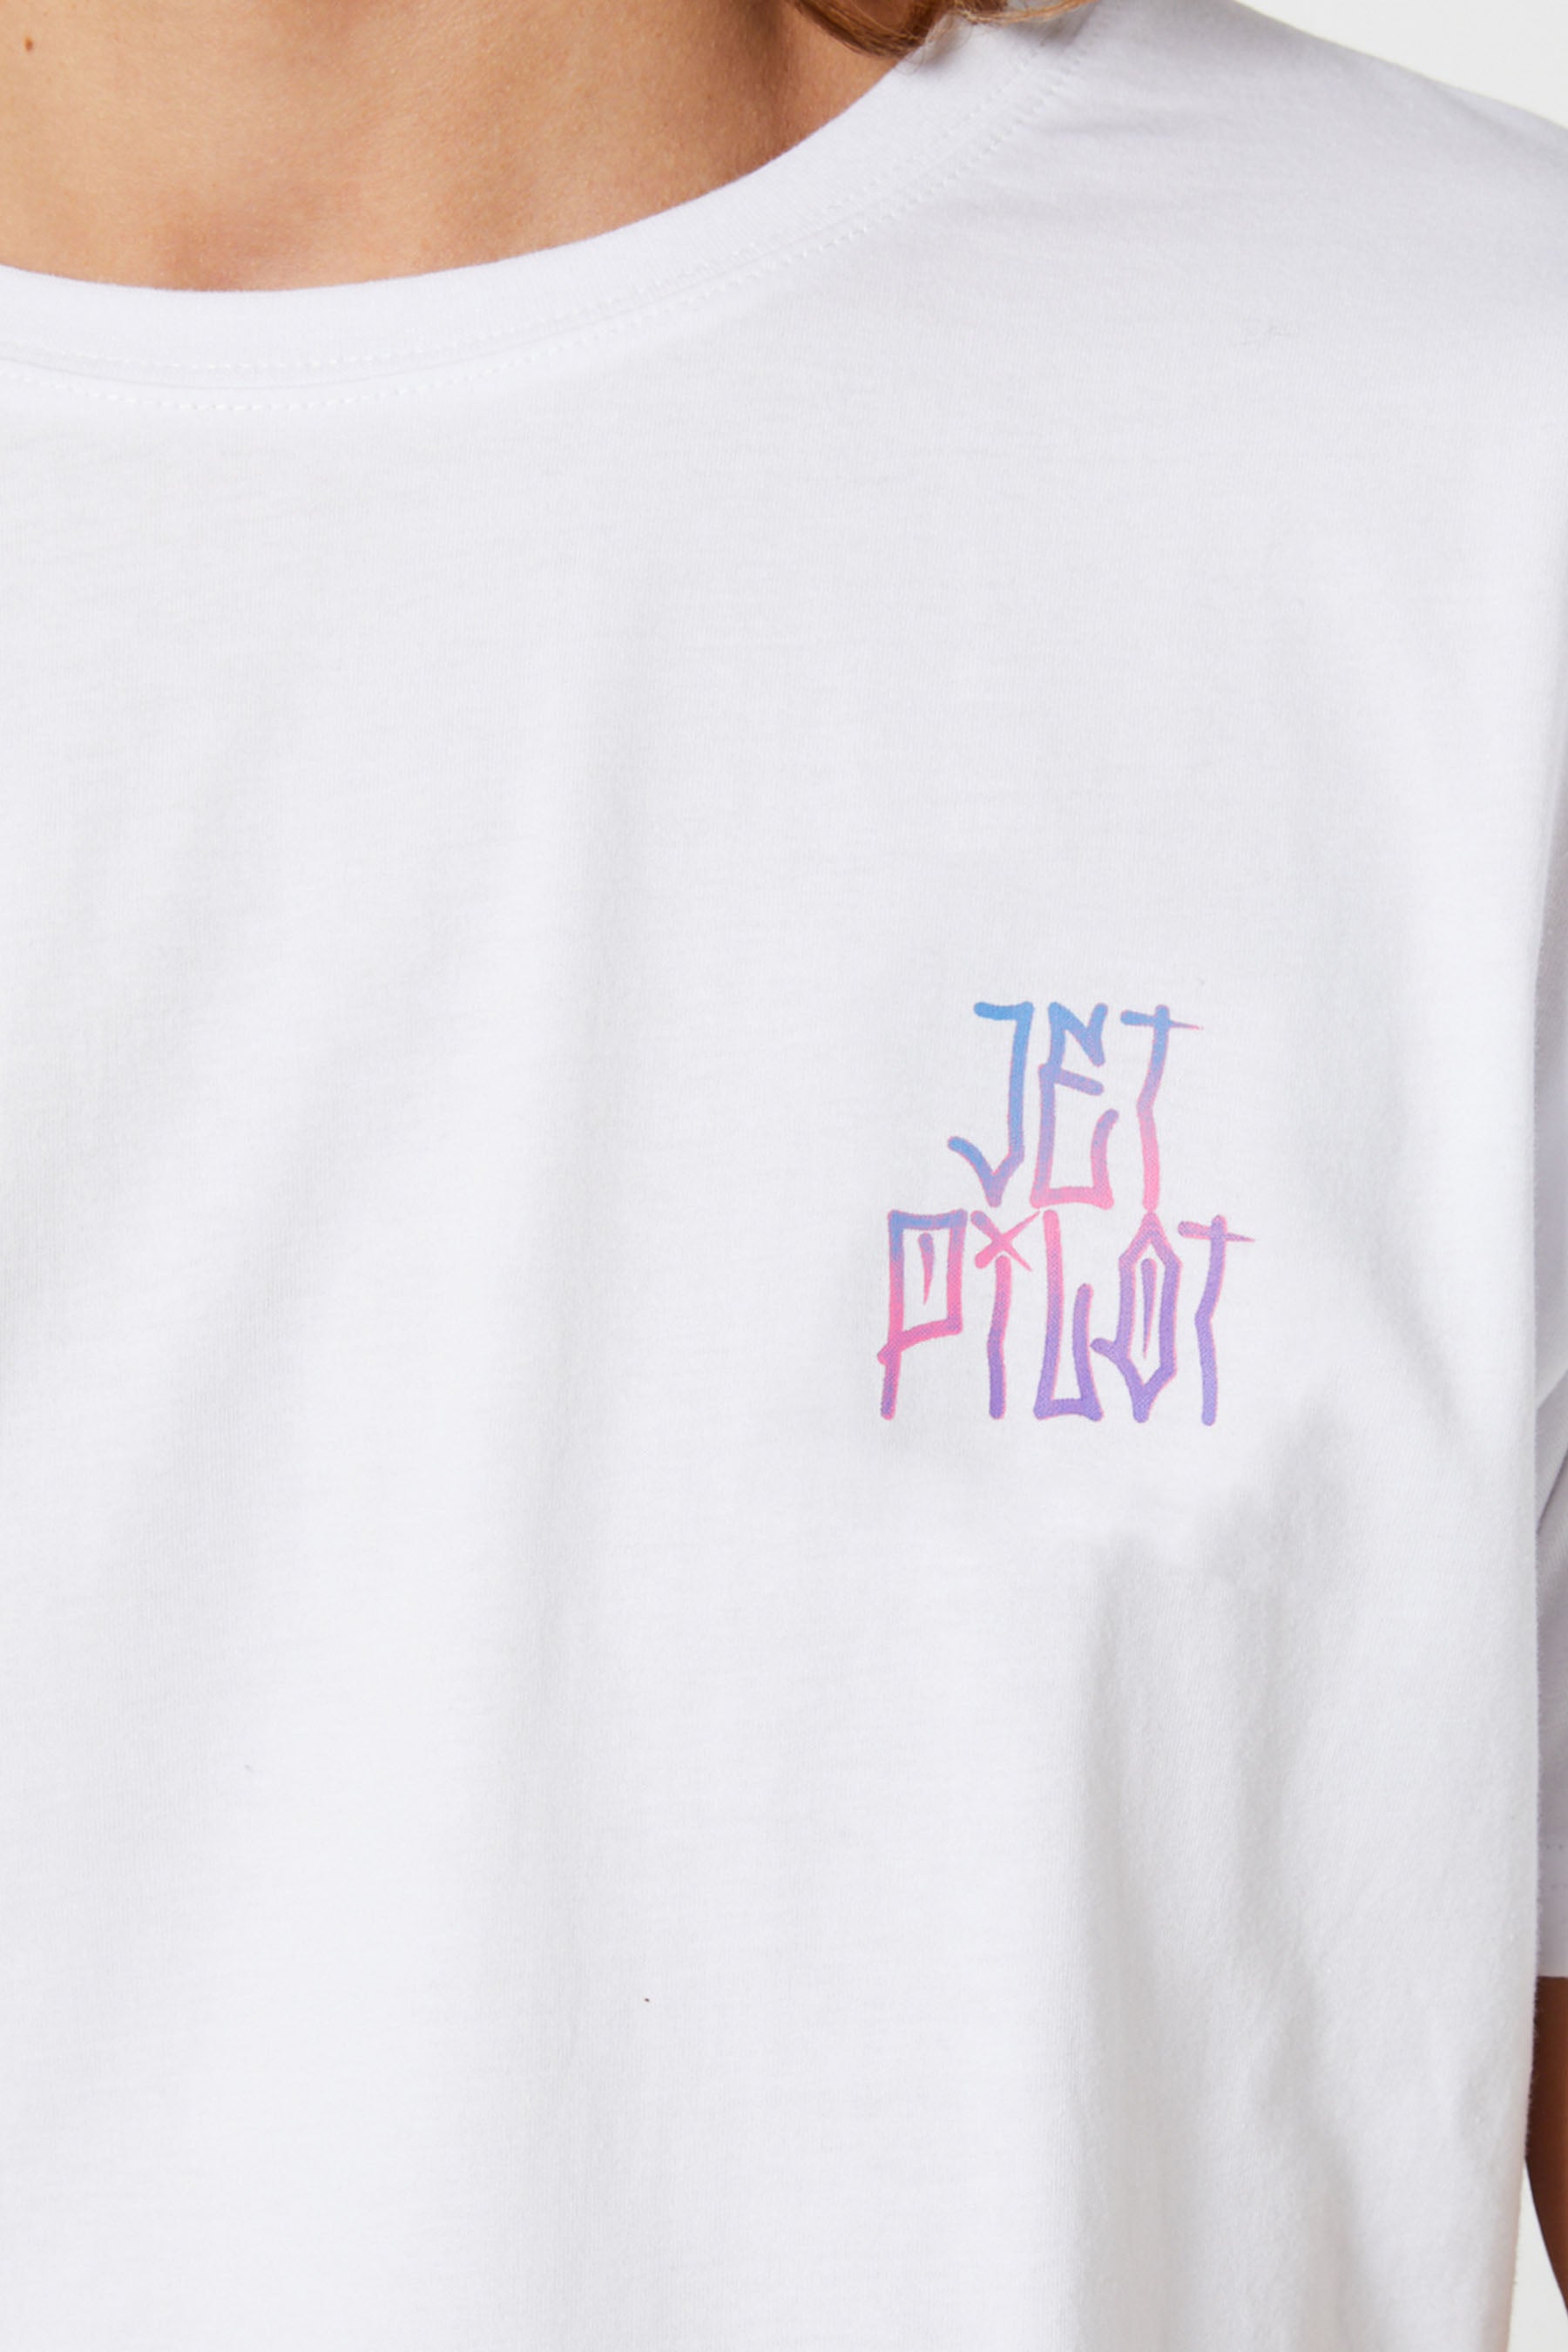 Jetpilot Full Send Mens S/S T-Shirt - White